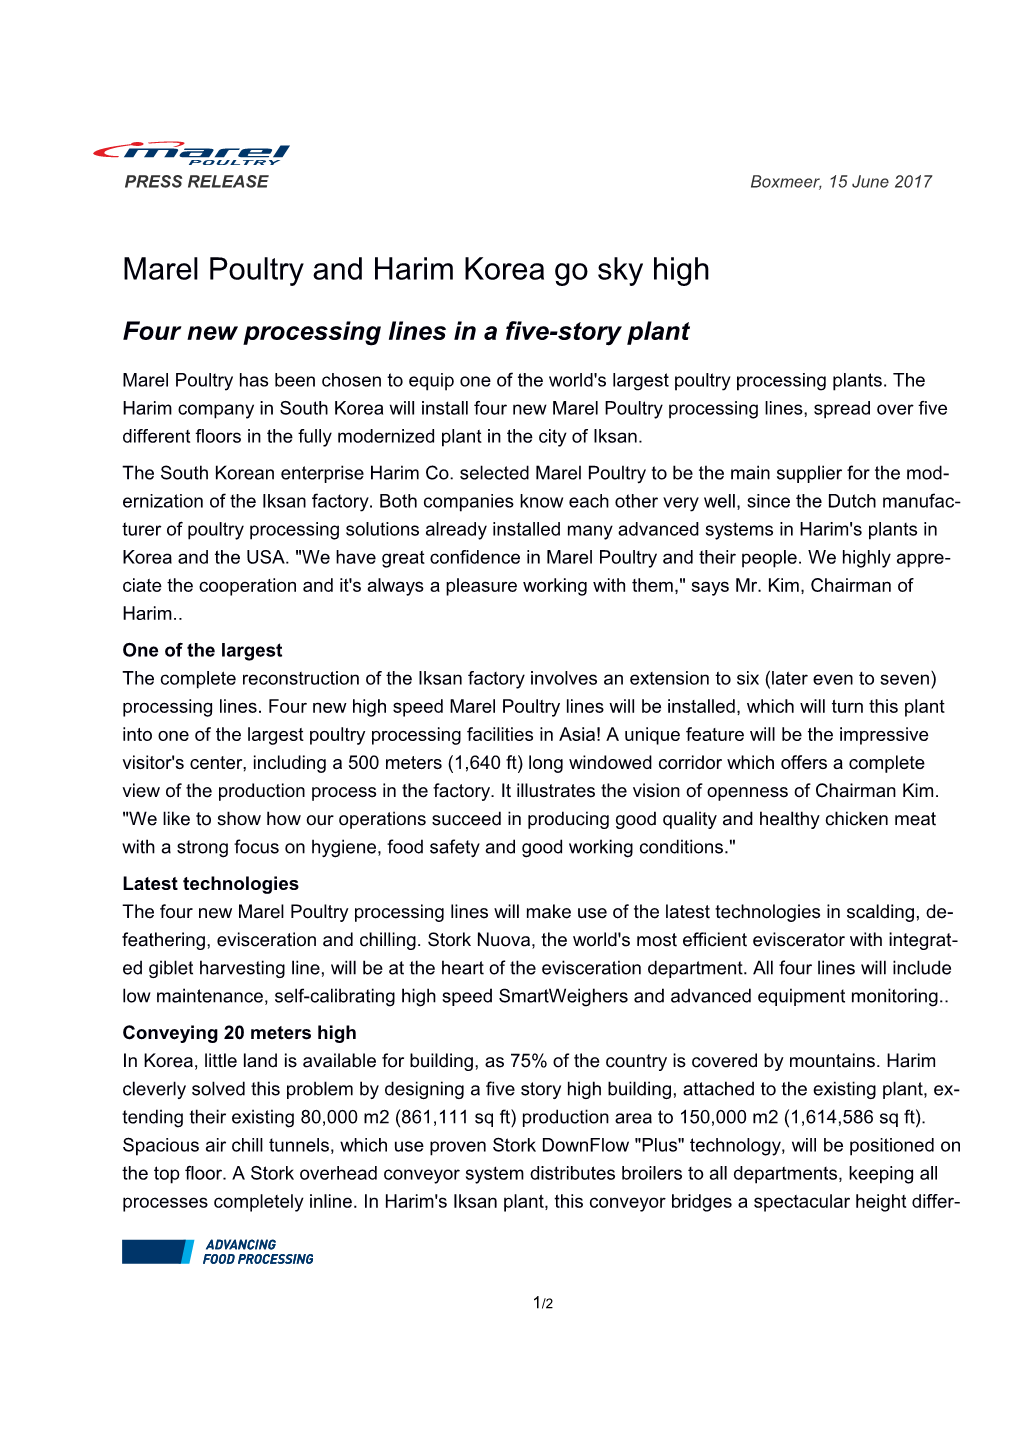 Marel Poultry and Harim Korea Go Sky High